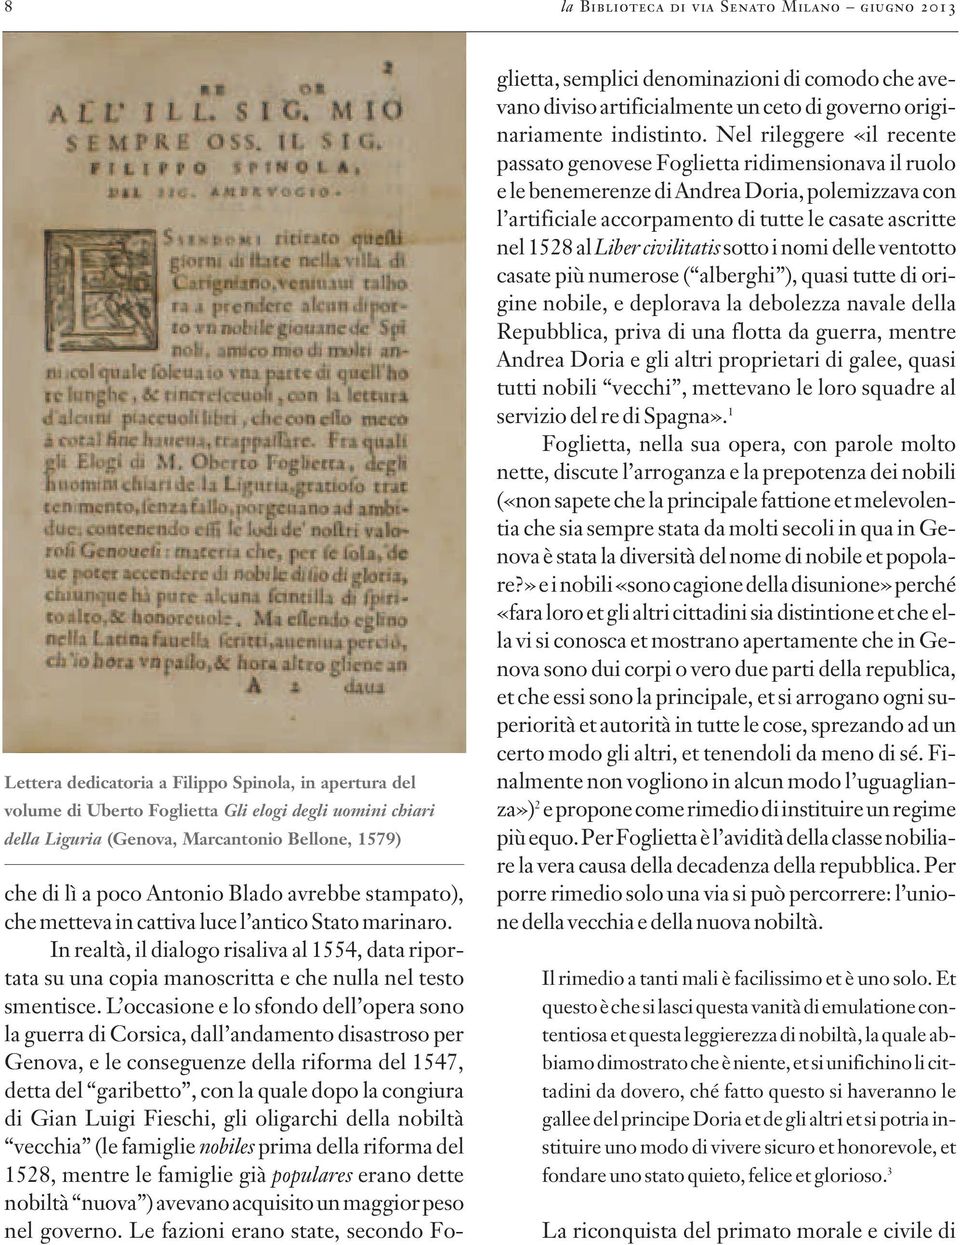 In realtà, il dialogo risaliva al 1554, data riportata su una copia manoscritta e che nulla nel testo smentisce.